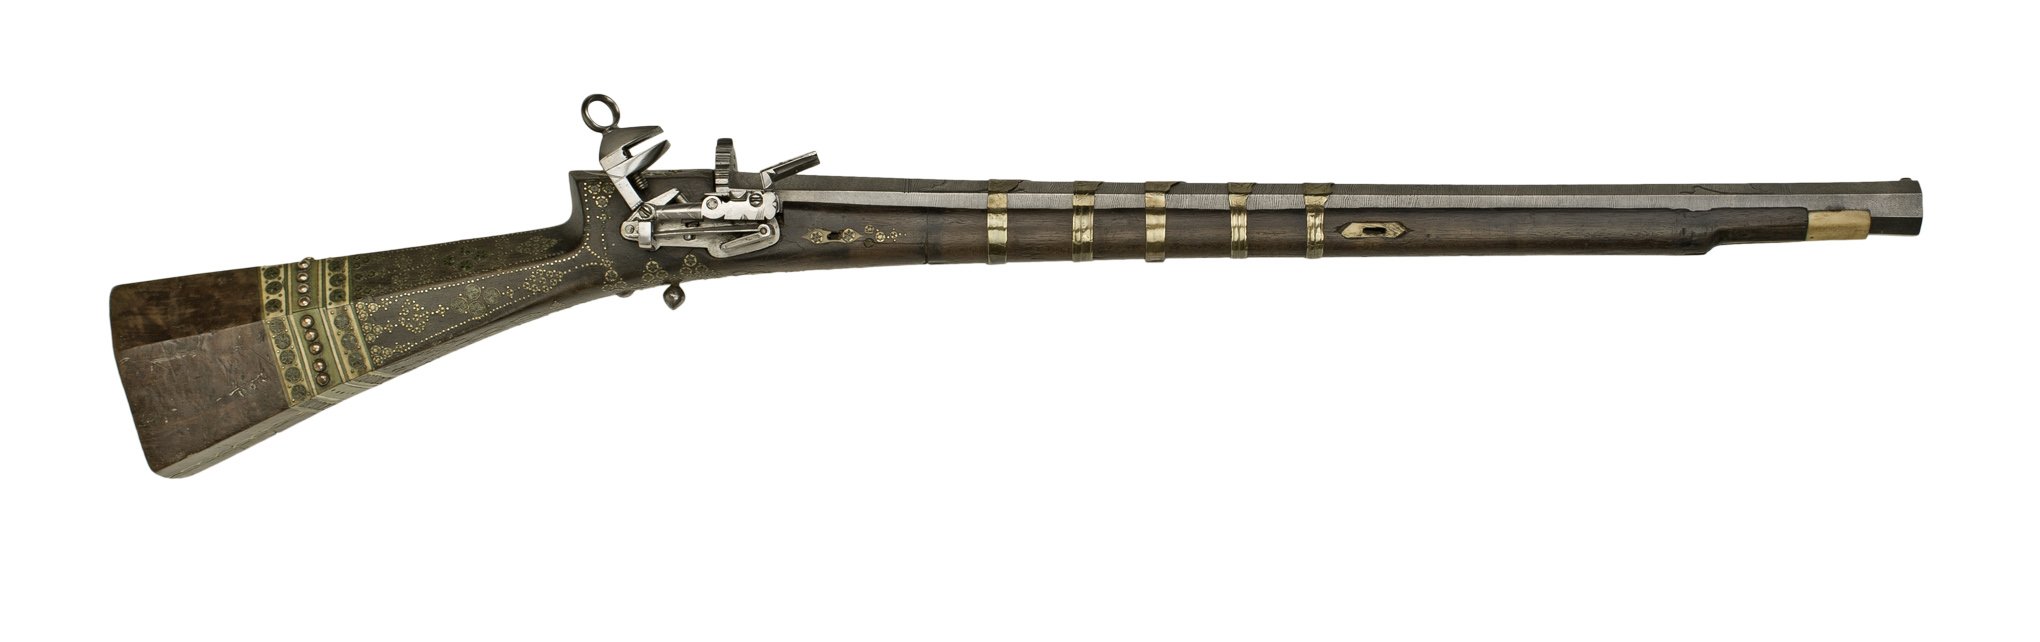 Osmanisches Schnappschlossgewehr (Kunstsammlungen der Veste Coburg CC BY-NC-SA)